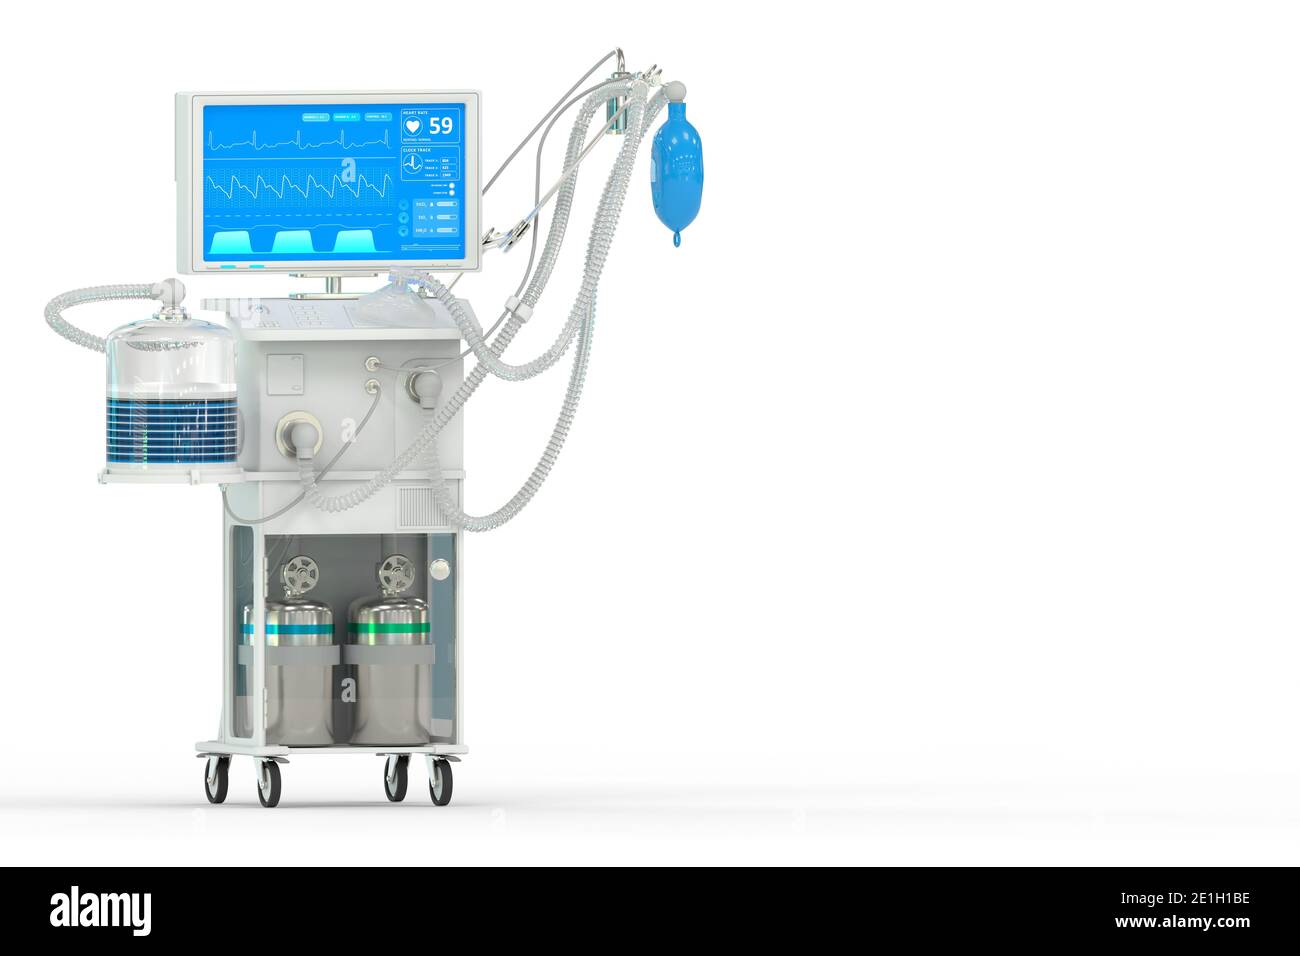 ICU künstlicher Lungenventilator mit fiktivem Design, isometrische Ansicht isoliert auf weiß - Kampf covid-19 Konzept, medizinische 3D-Illustration Stockfoto